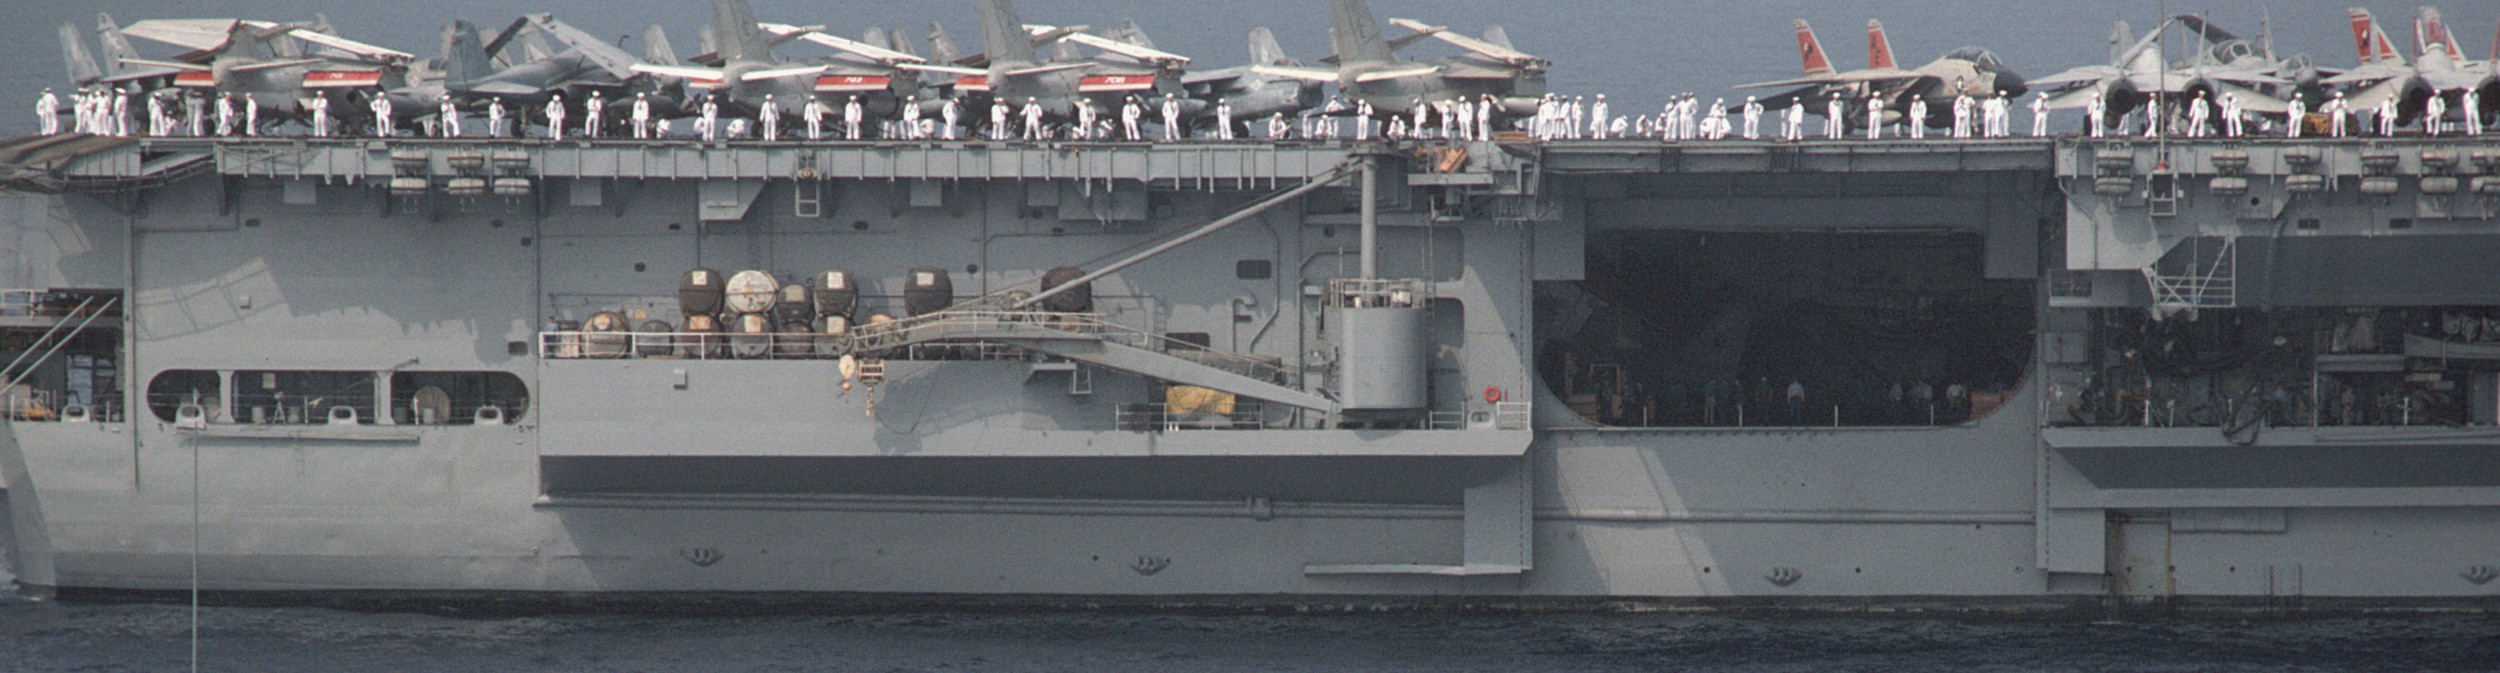 cv-59 uss forrestal aircraft carrier air wing cvw-6 us navy 71